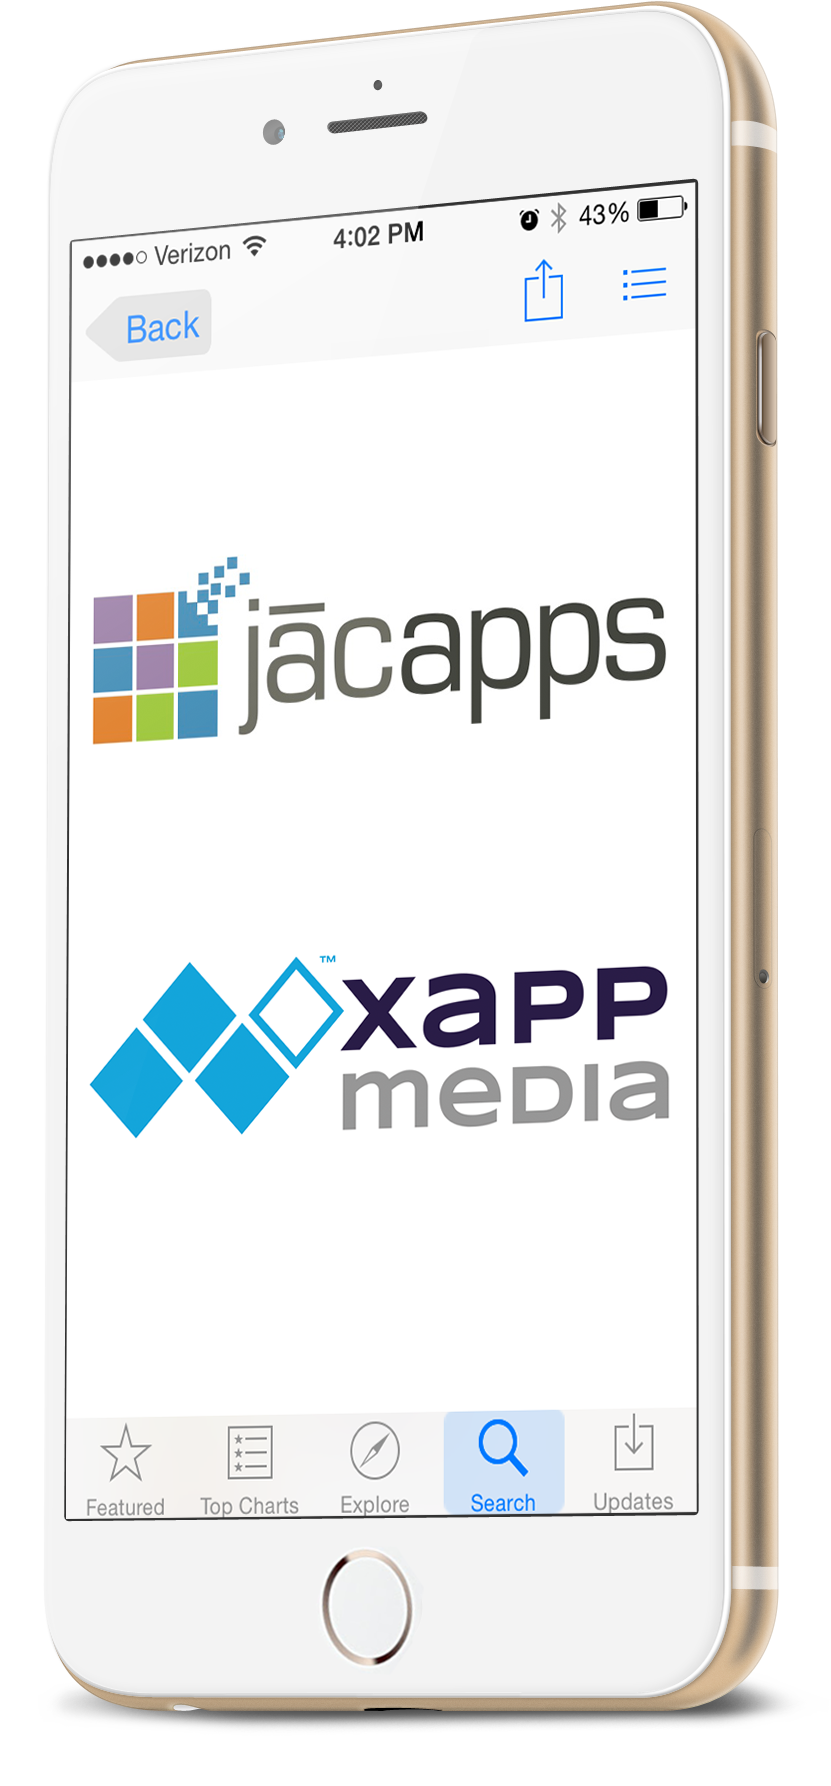 JAX Drives Mobile Revenue